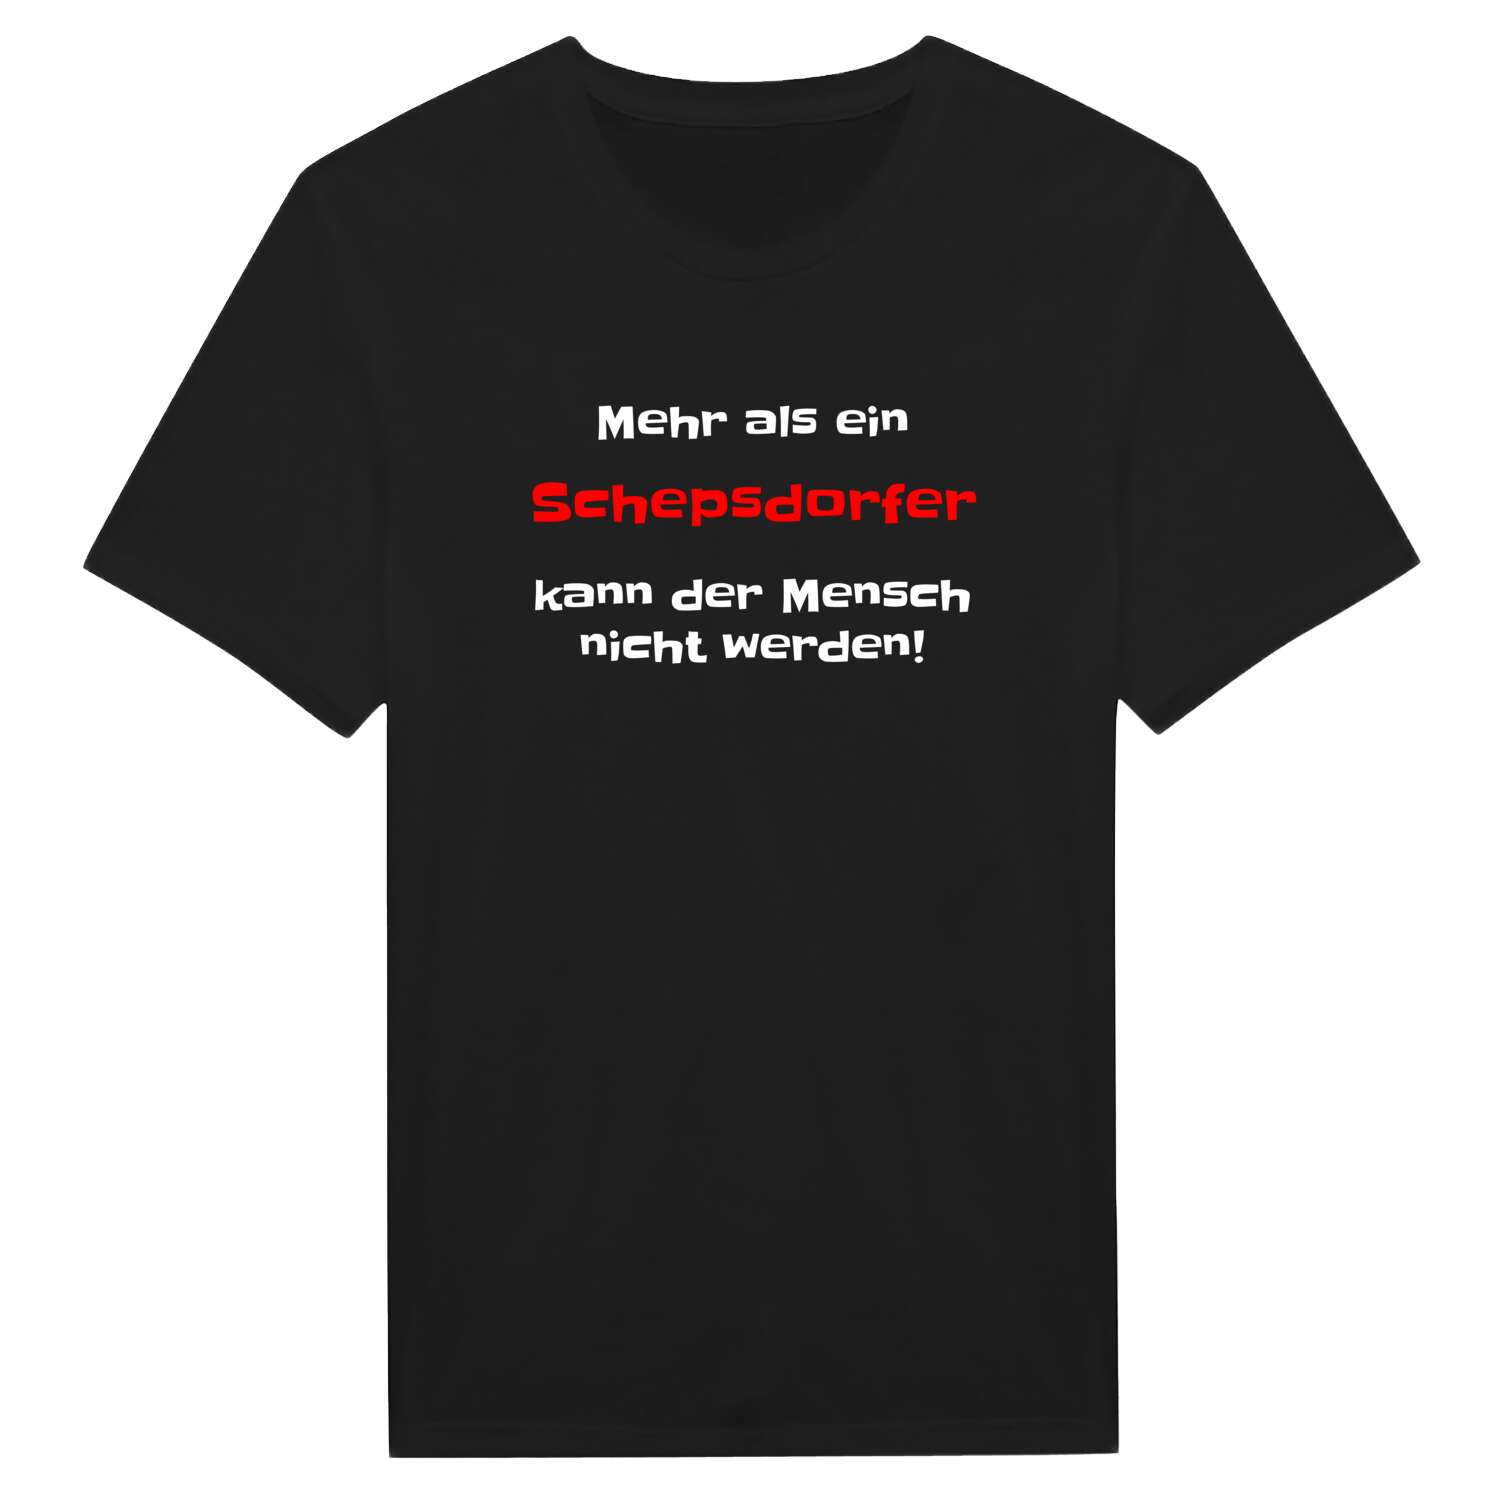 Schepsdorf T-Shirt »Mehr als ein«